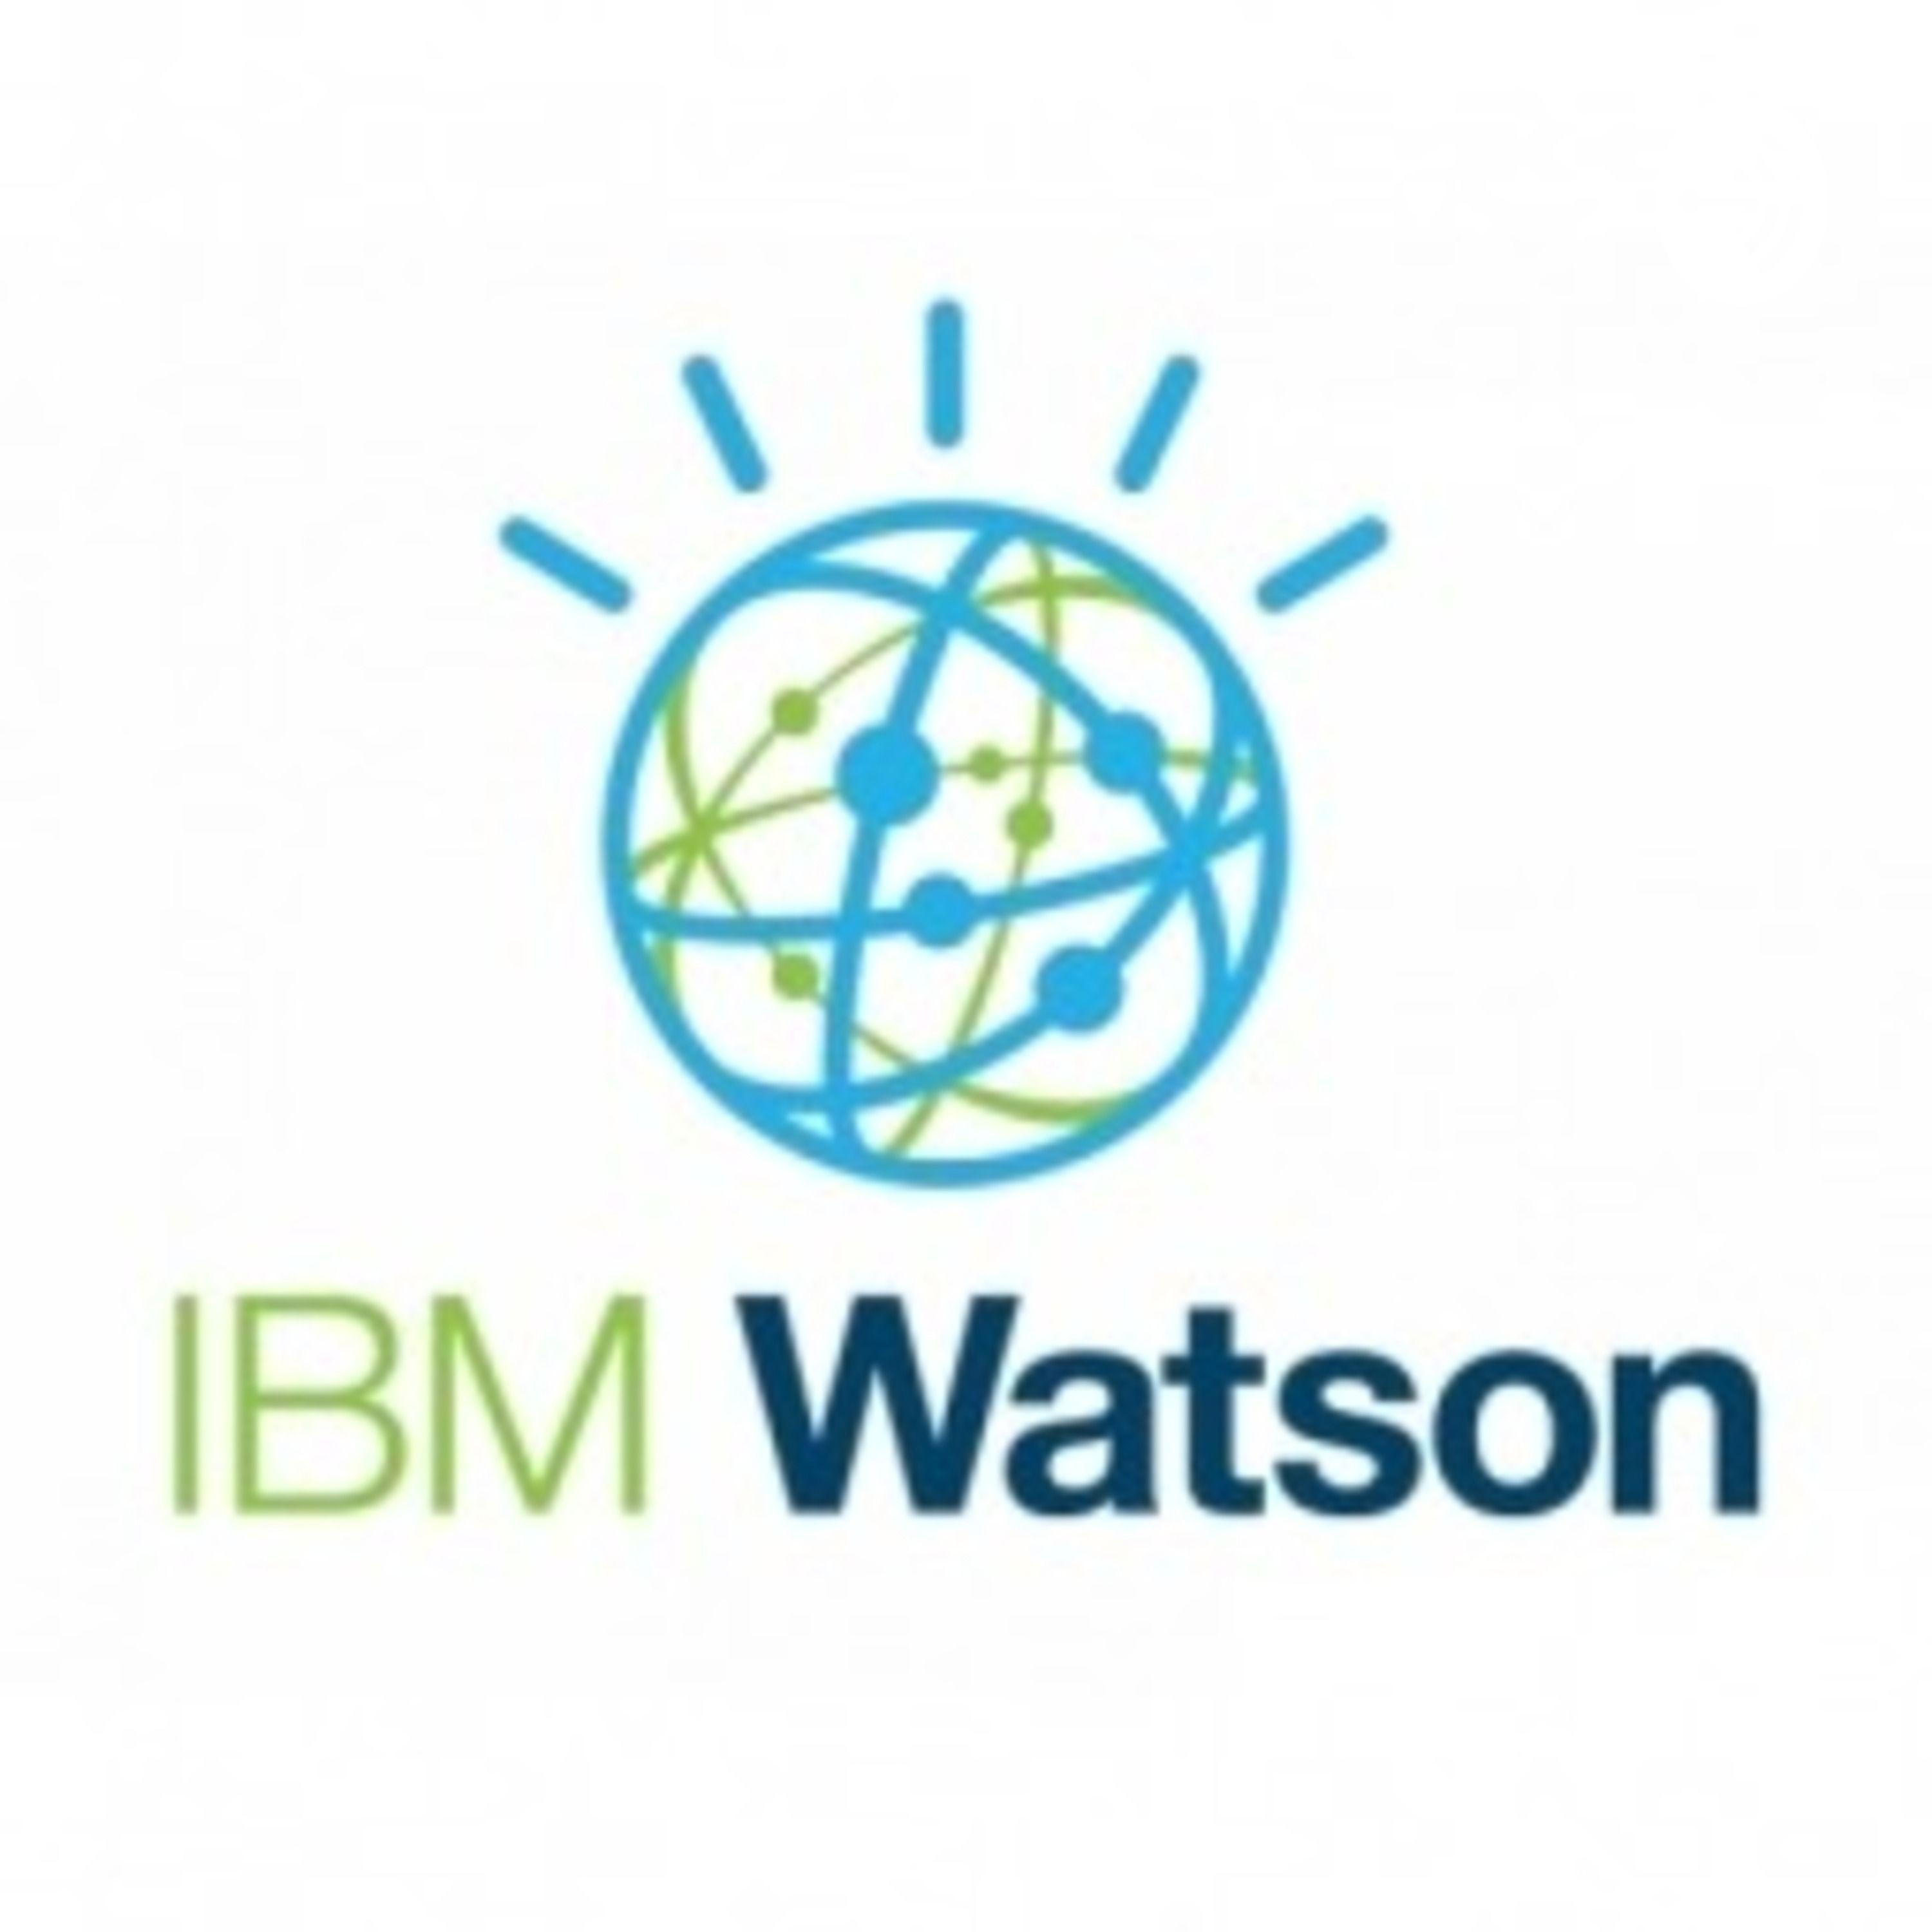 Use IBM Watson Logo - IBM Watson. Listen via Stitcher Radio On Demand